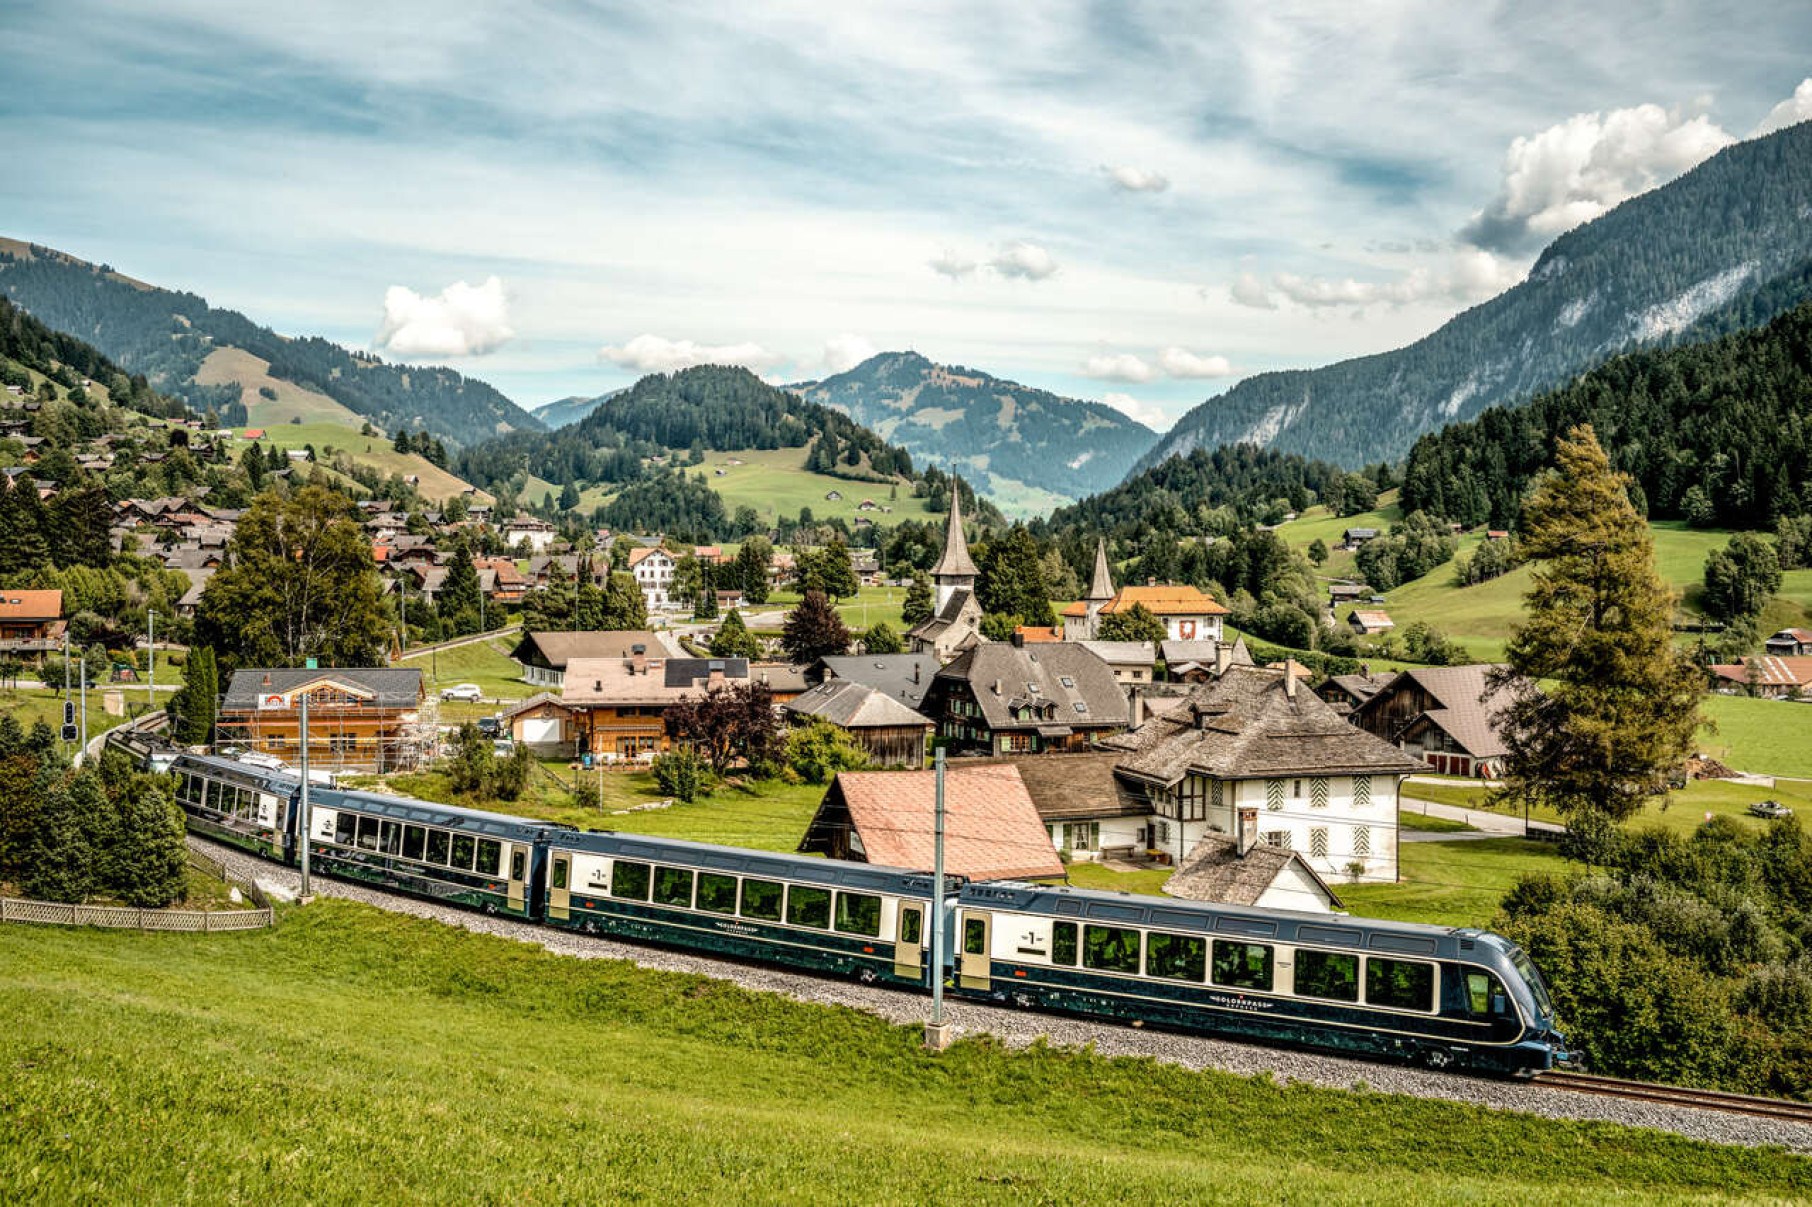 Conheça Suíça de trem pelo “Grand Train Tour of Switzerland”